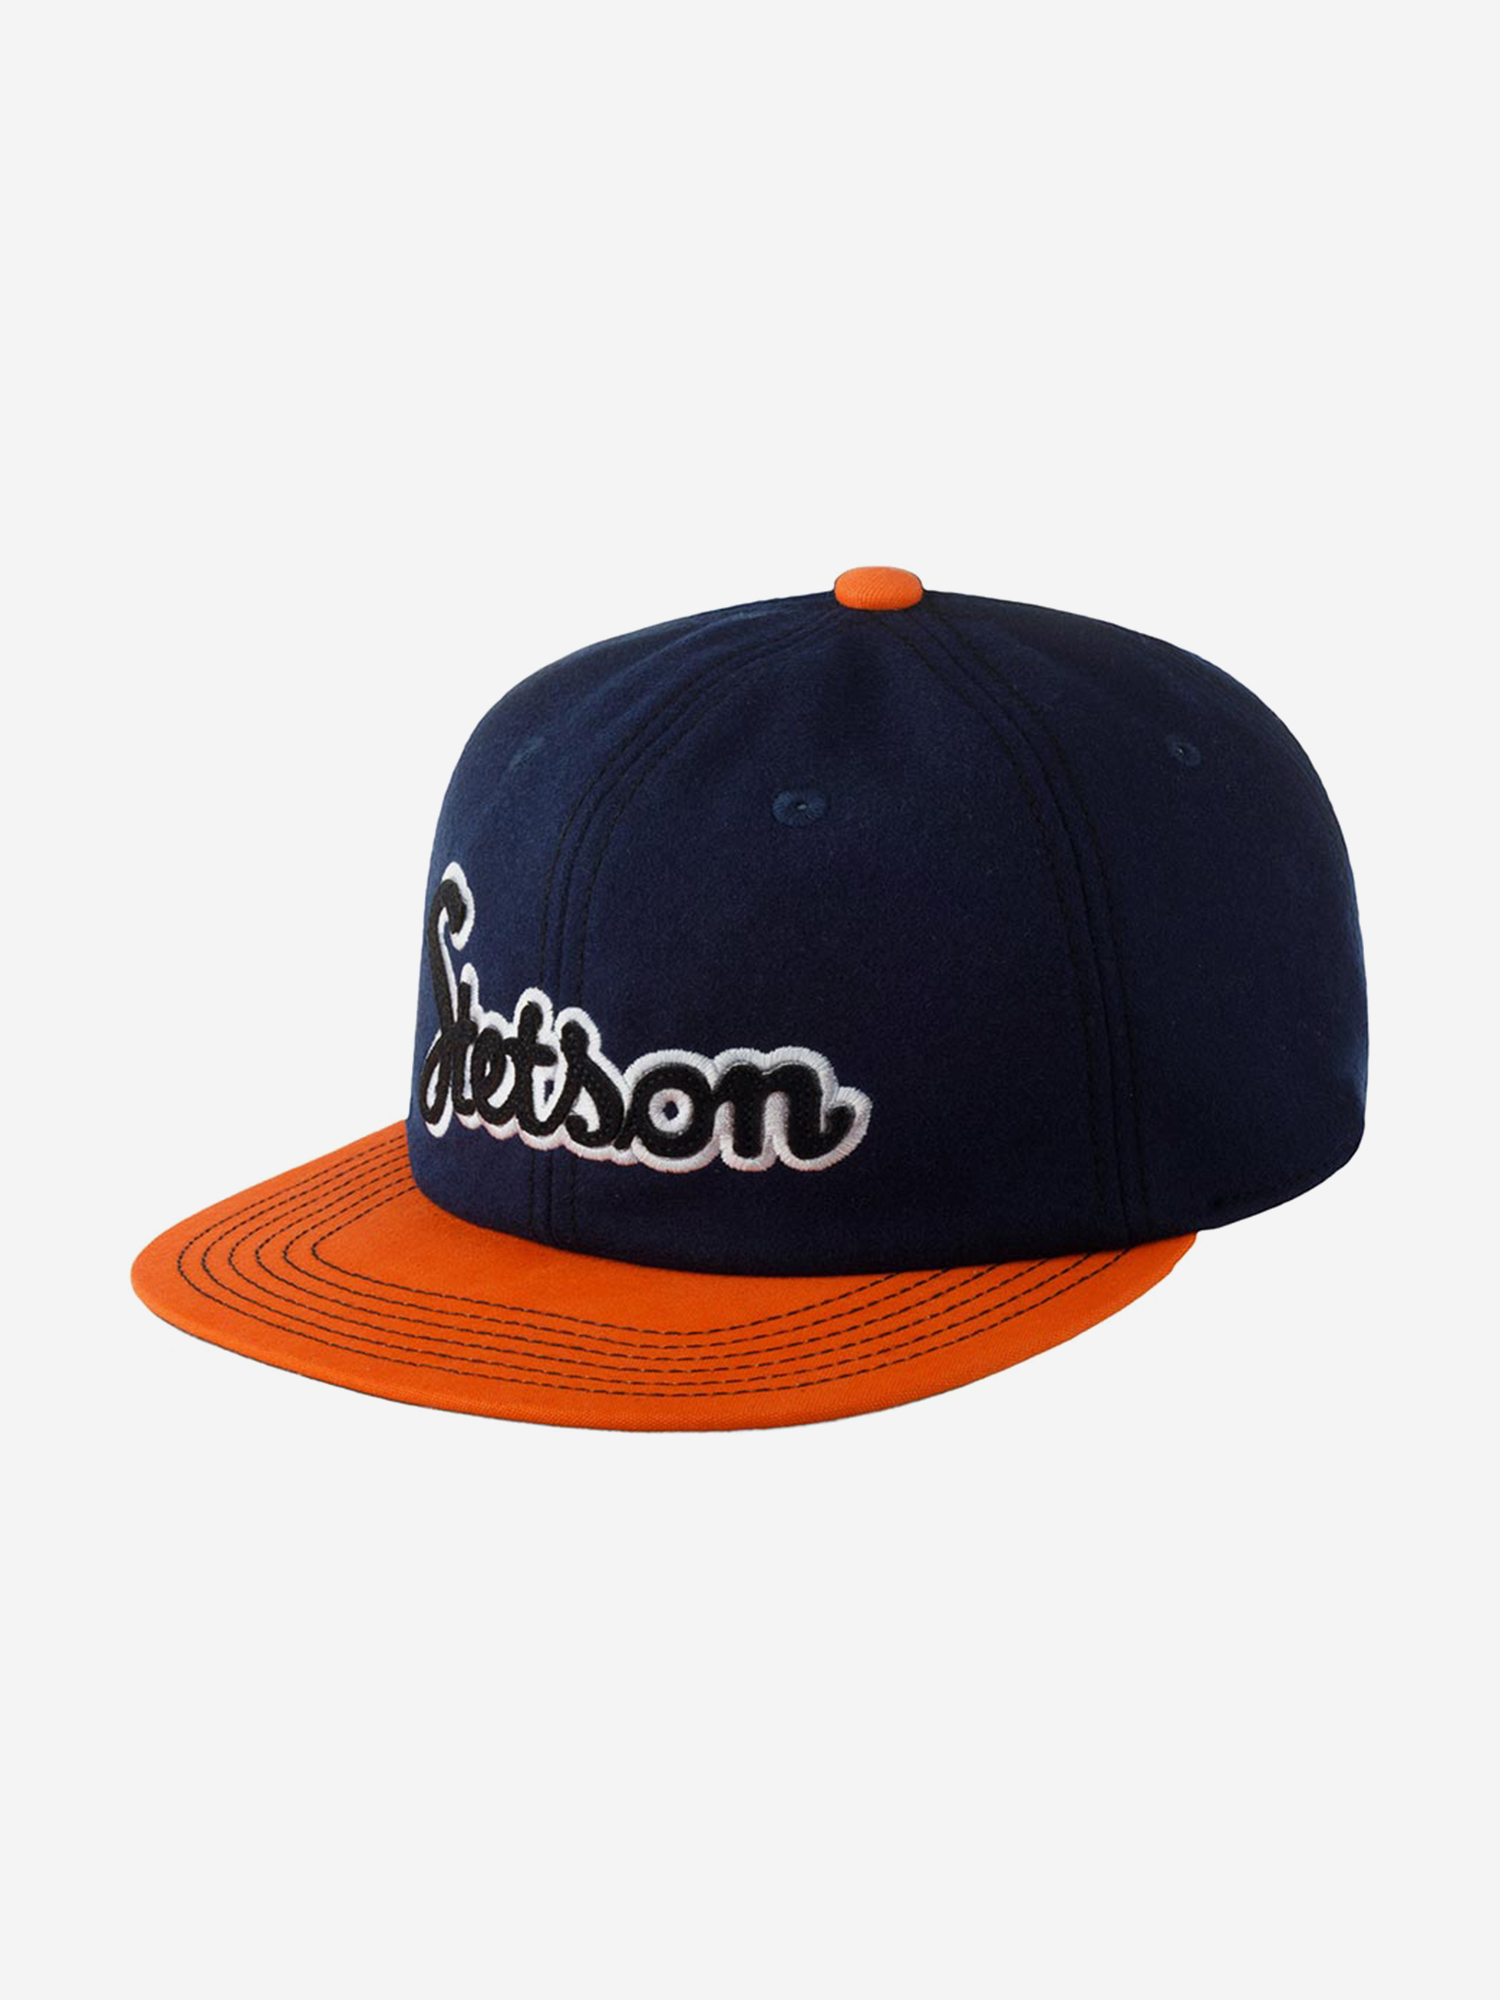 Бейсболка с прямым козырьком STETSON 7790108 BASEBALL CAP RETRO SCRIPT (синий), Синий